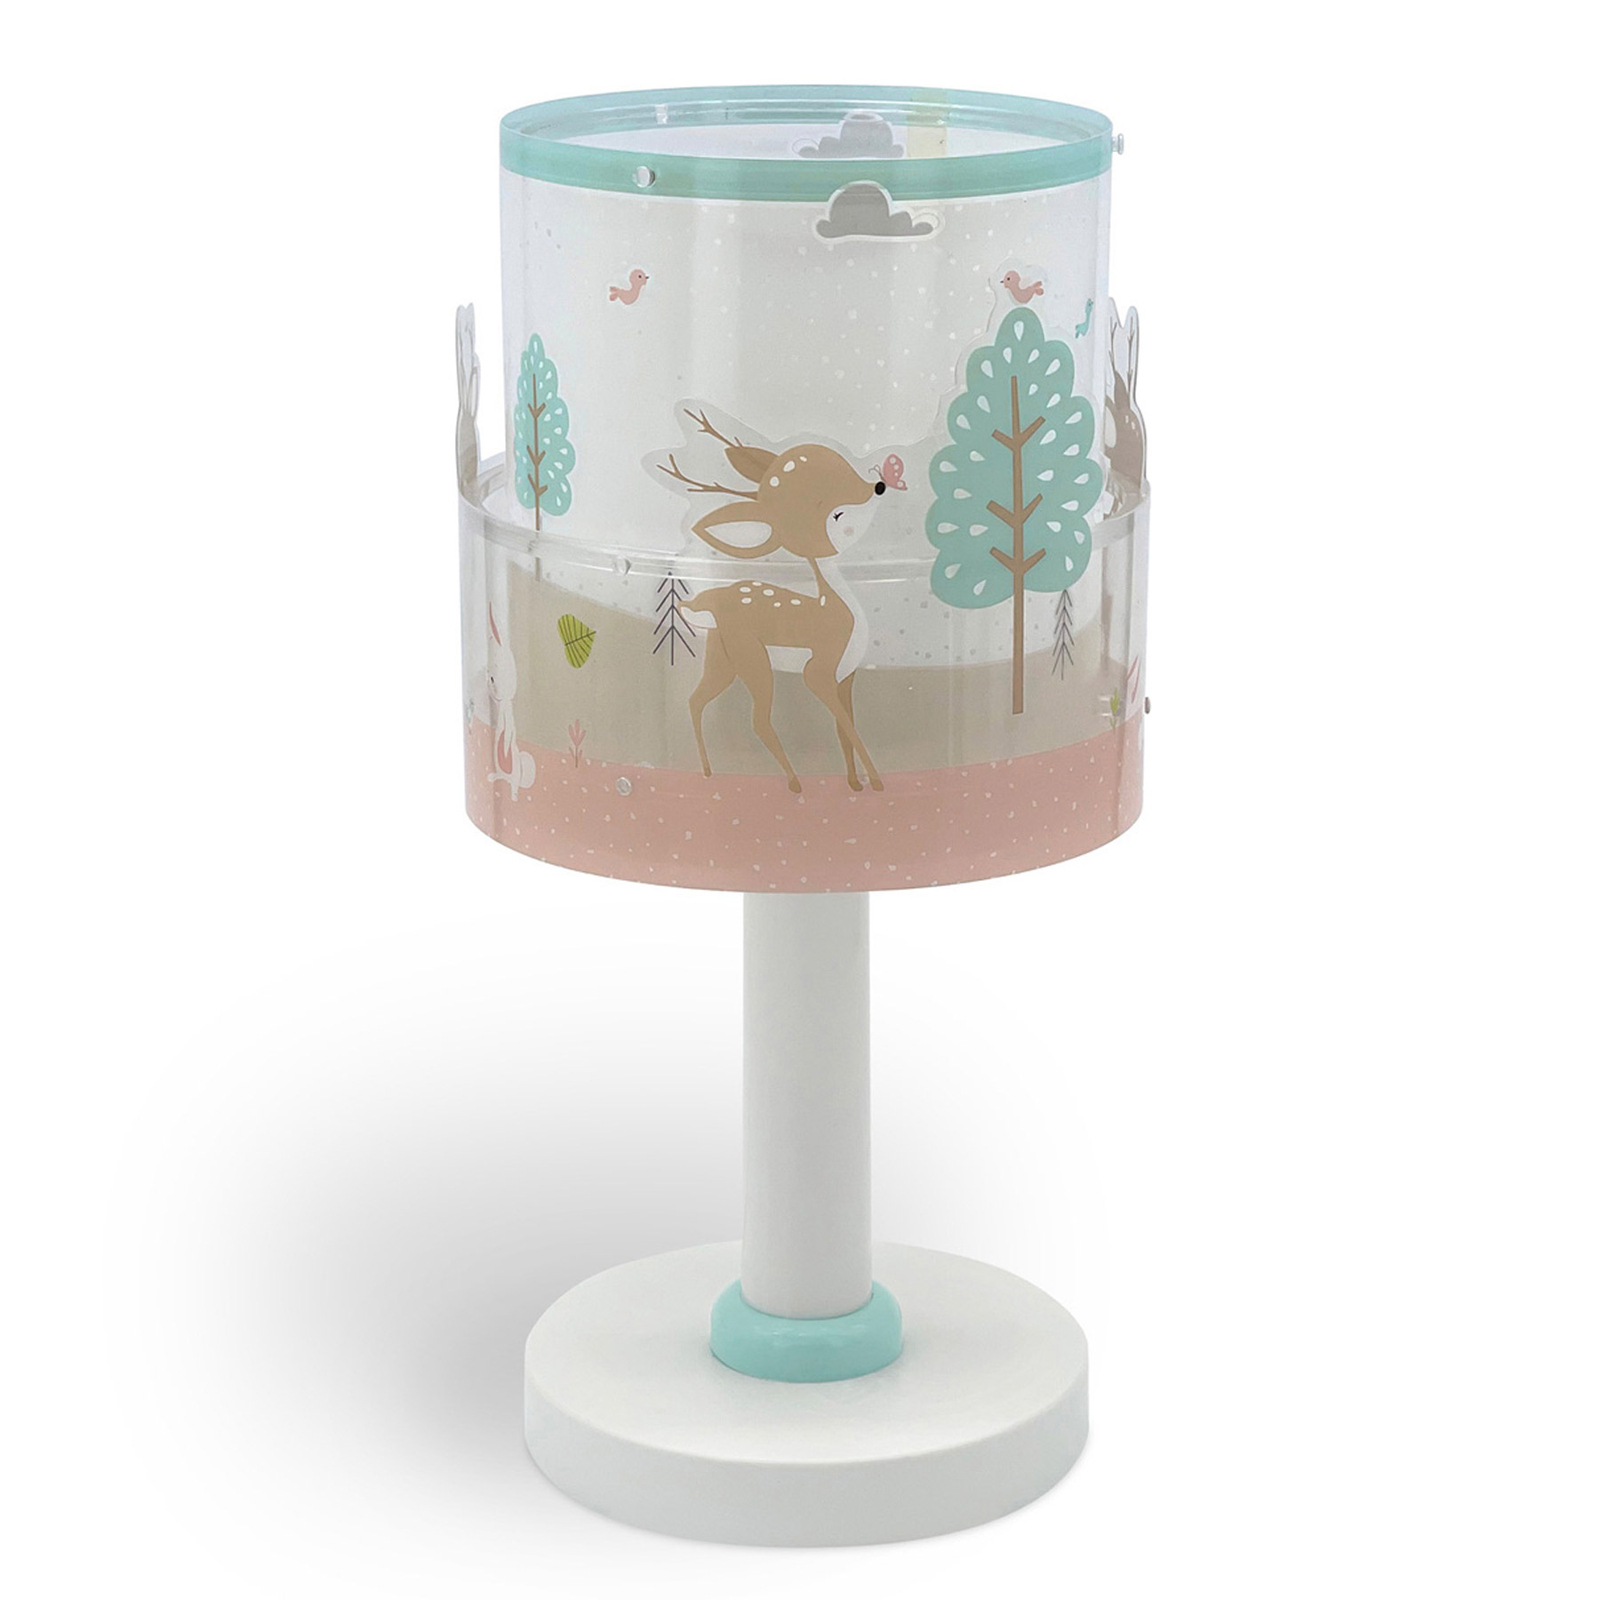 Dalber children's table lamp Loving Deer, deer motif